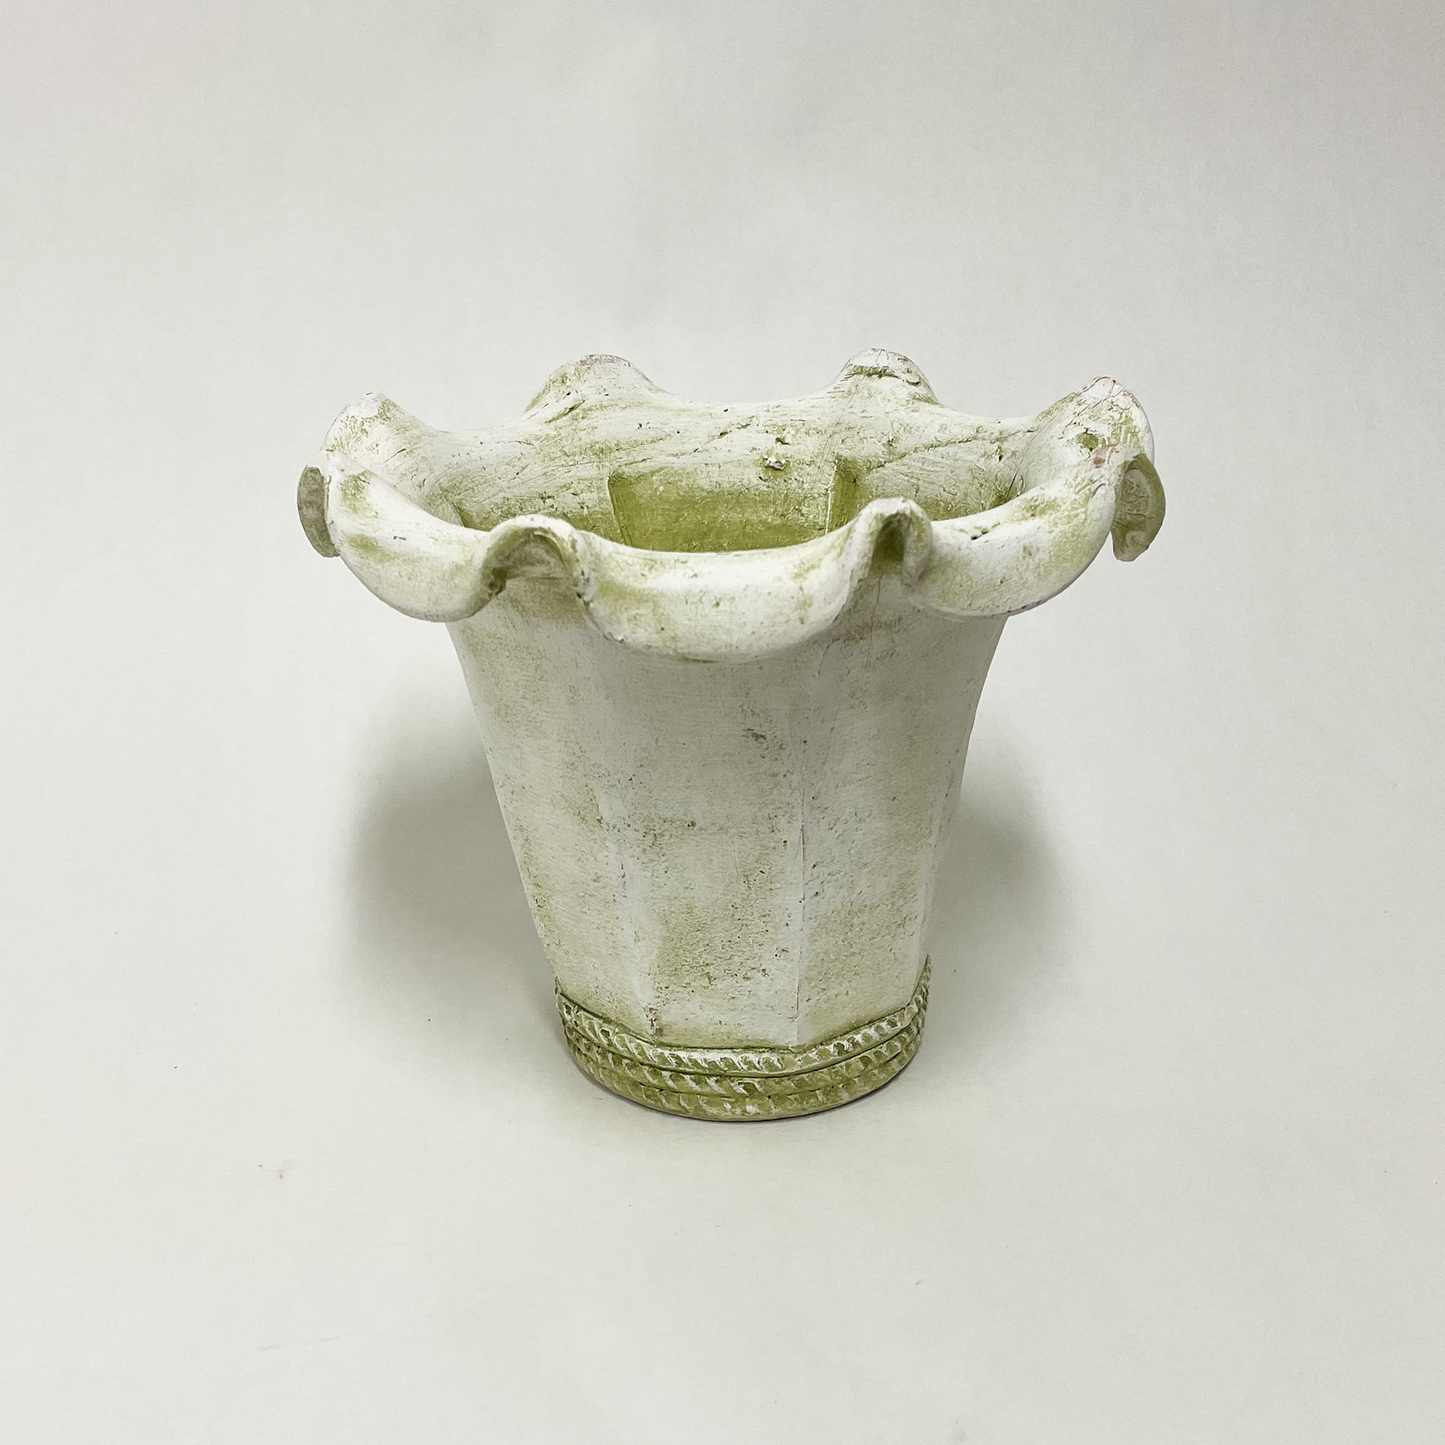 Terracotta - Ruffled Rim White with Moss